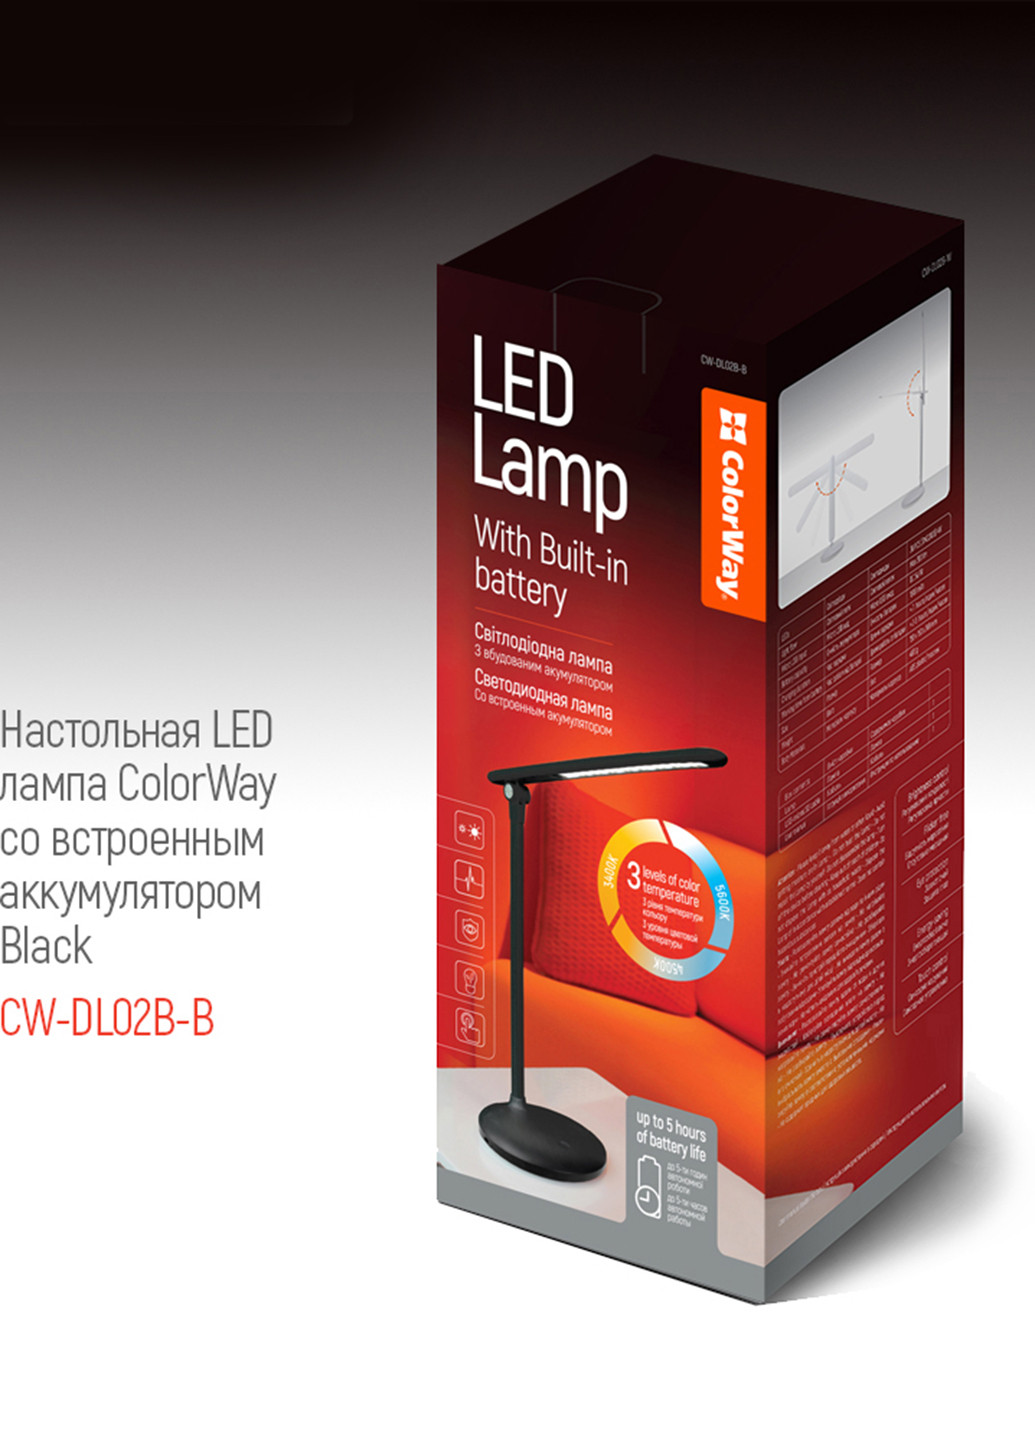 Настольная LED лампа со встроенным аккумулятором Black (CW-DL02B-B) Colorway настольная led со встроенным аккумулятором black (cw-dl02b-b) (145694551)